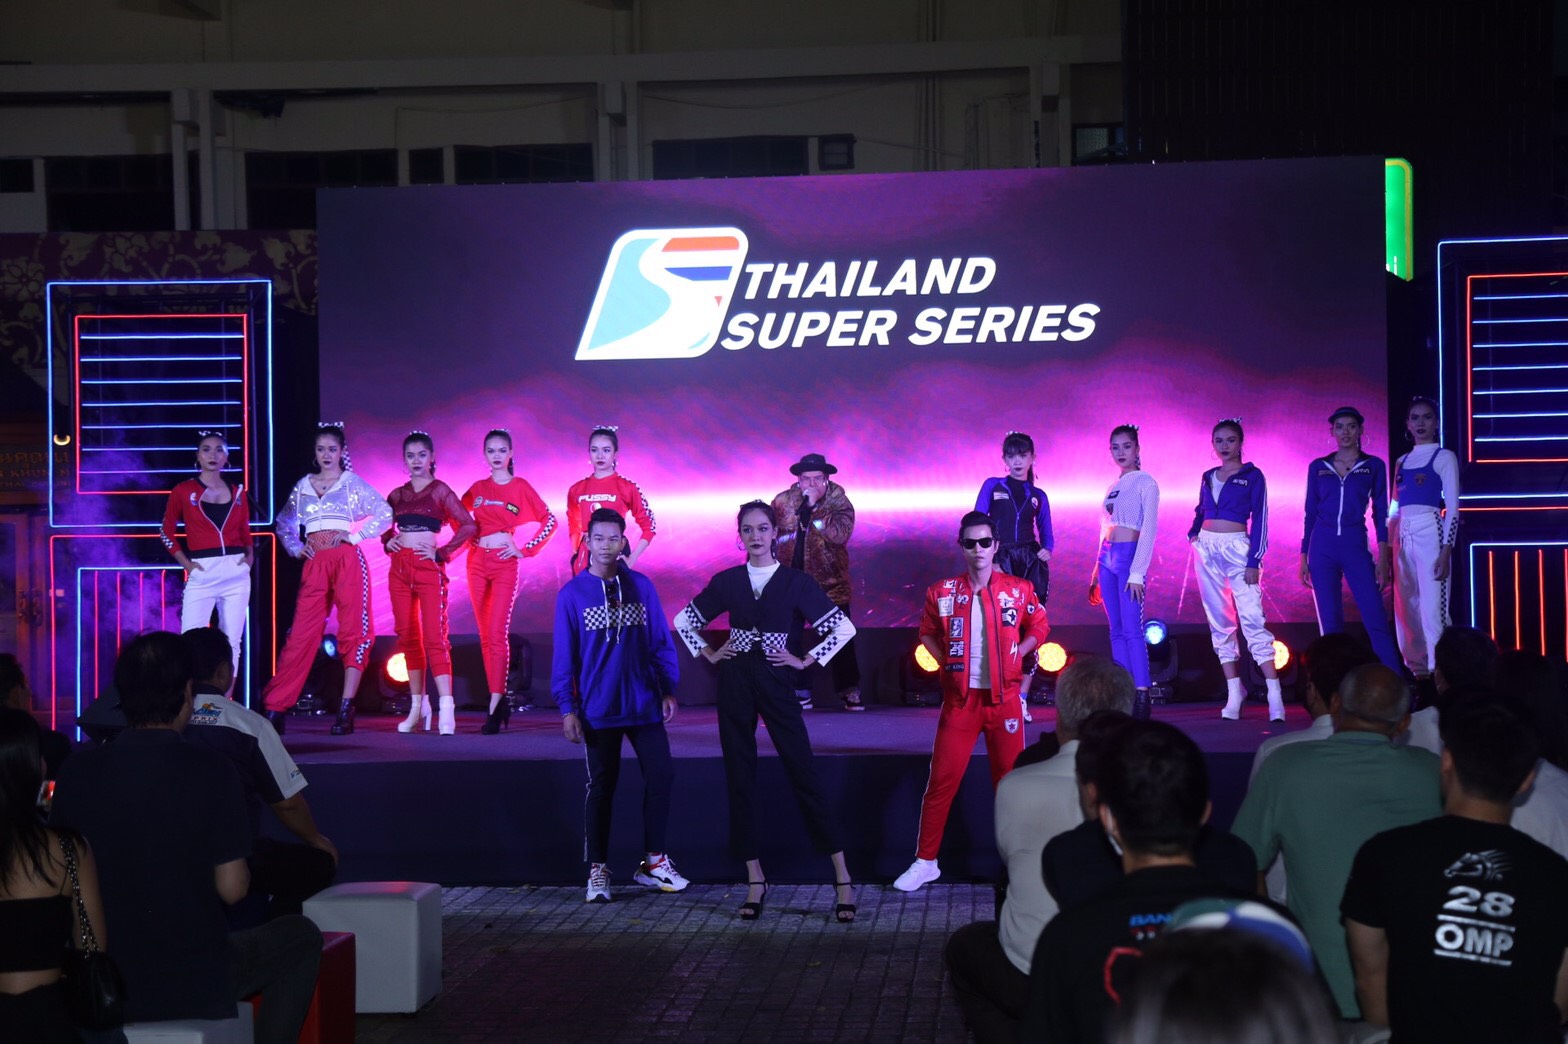 Thailand Super Series เปิดตัวศึก 2020 ยิ่งใหญ่ ครั้งแรก ของมอเตอร์สปอร์ตไทย ก้าวสู่ Support Race การแข่งขัน Formula 1 พร้อมเตรียมตัวในฐานะ เจ้าบ้าน ต้อนรับรายการแข่งระดับนานาชาติตลอดฤดูกาล